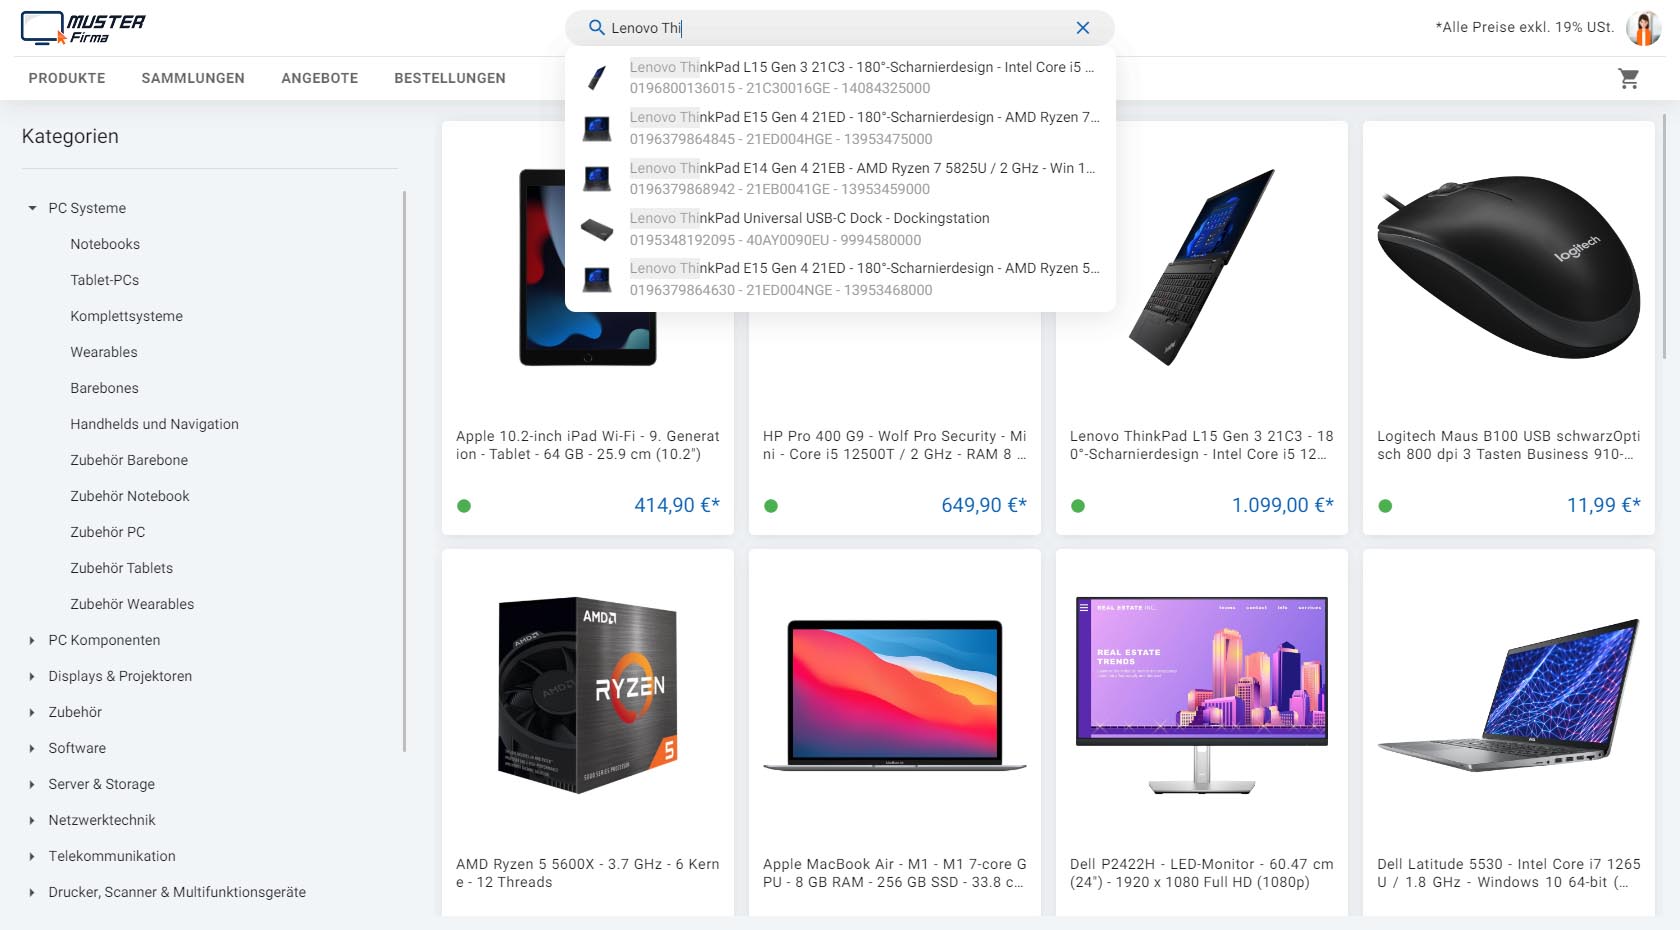 Screenshot eines B2B Onlineshops, der mit der ITscope B2B Suite erstellt wurde. Im Suchfeld wird "Lenovo Thi" eingegeben und Produkte werden vorgeschlagen.